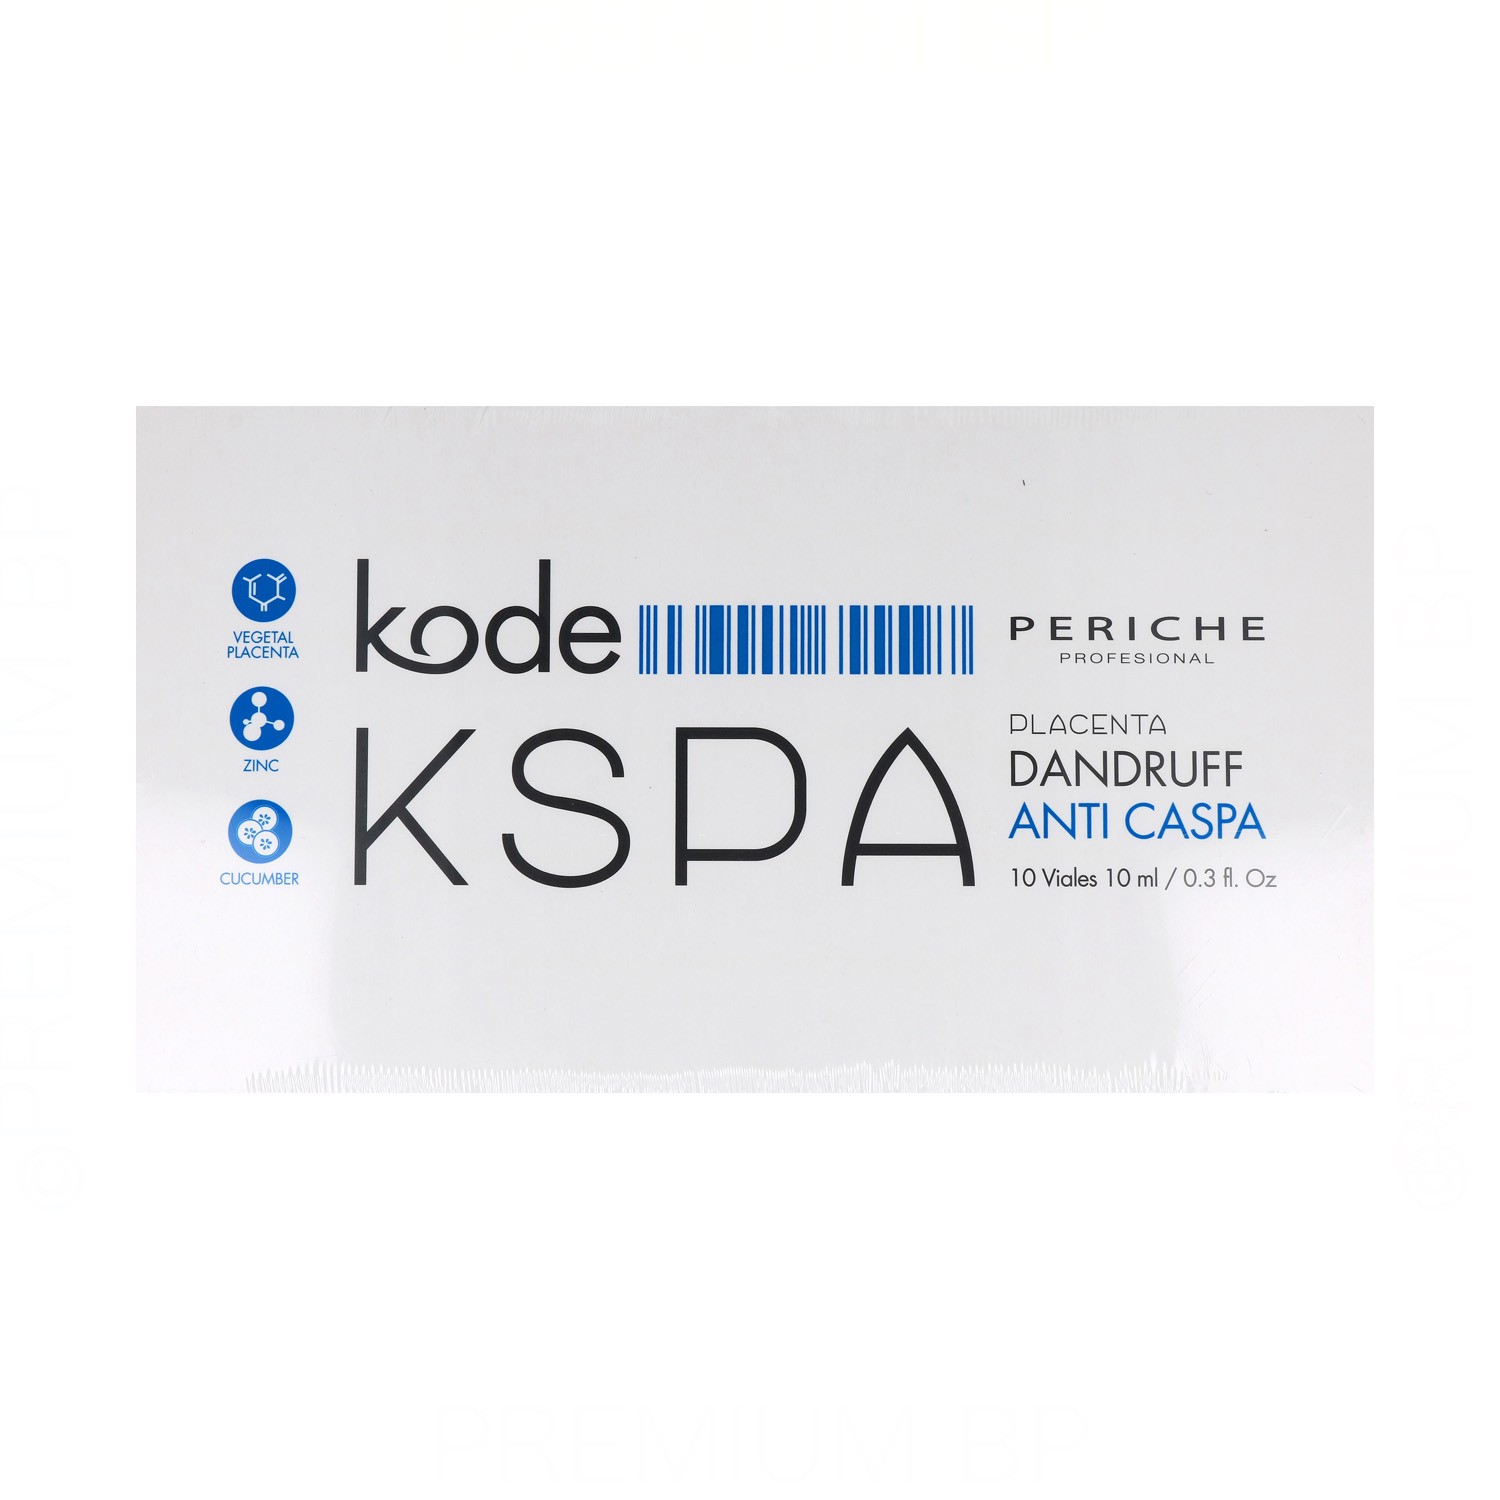 Periche Kode Kspa Placenta/Anti Caspa 10X10 ml